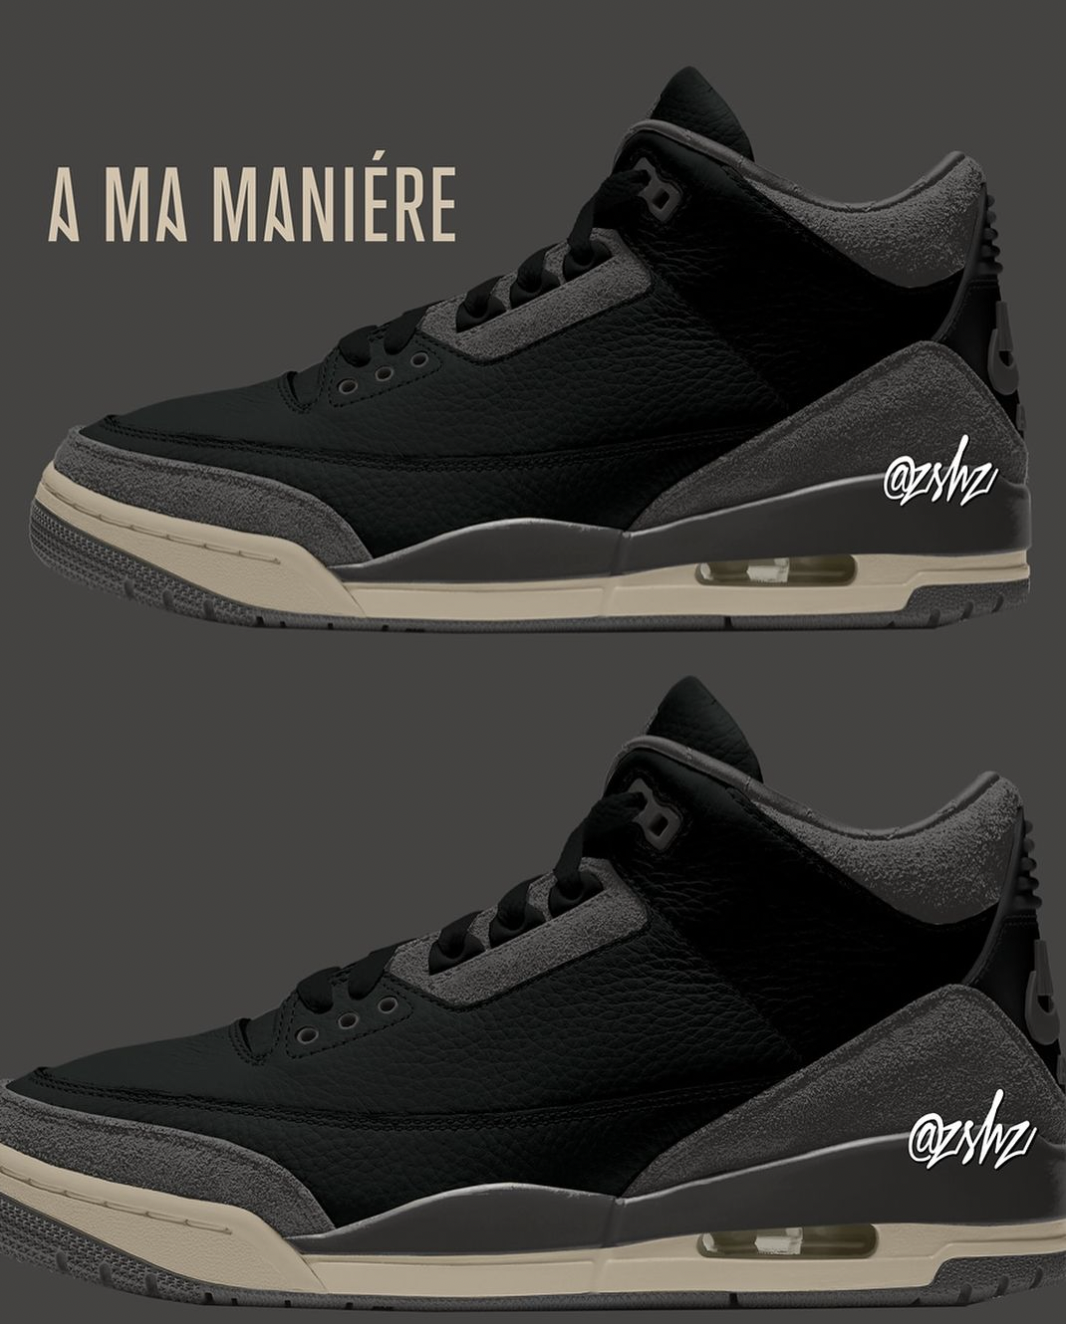 A Ma Maniere Air Jordan 3